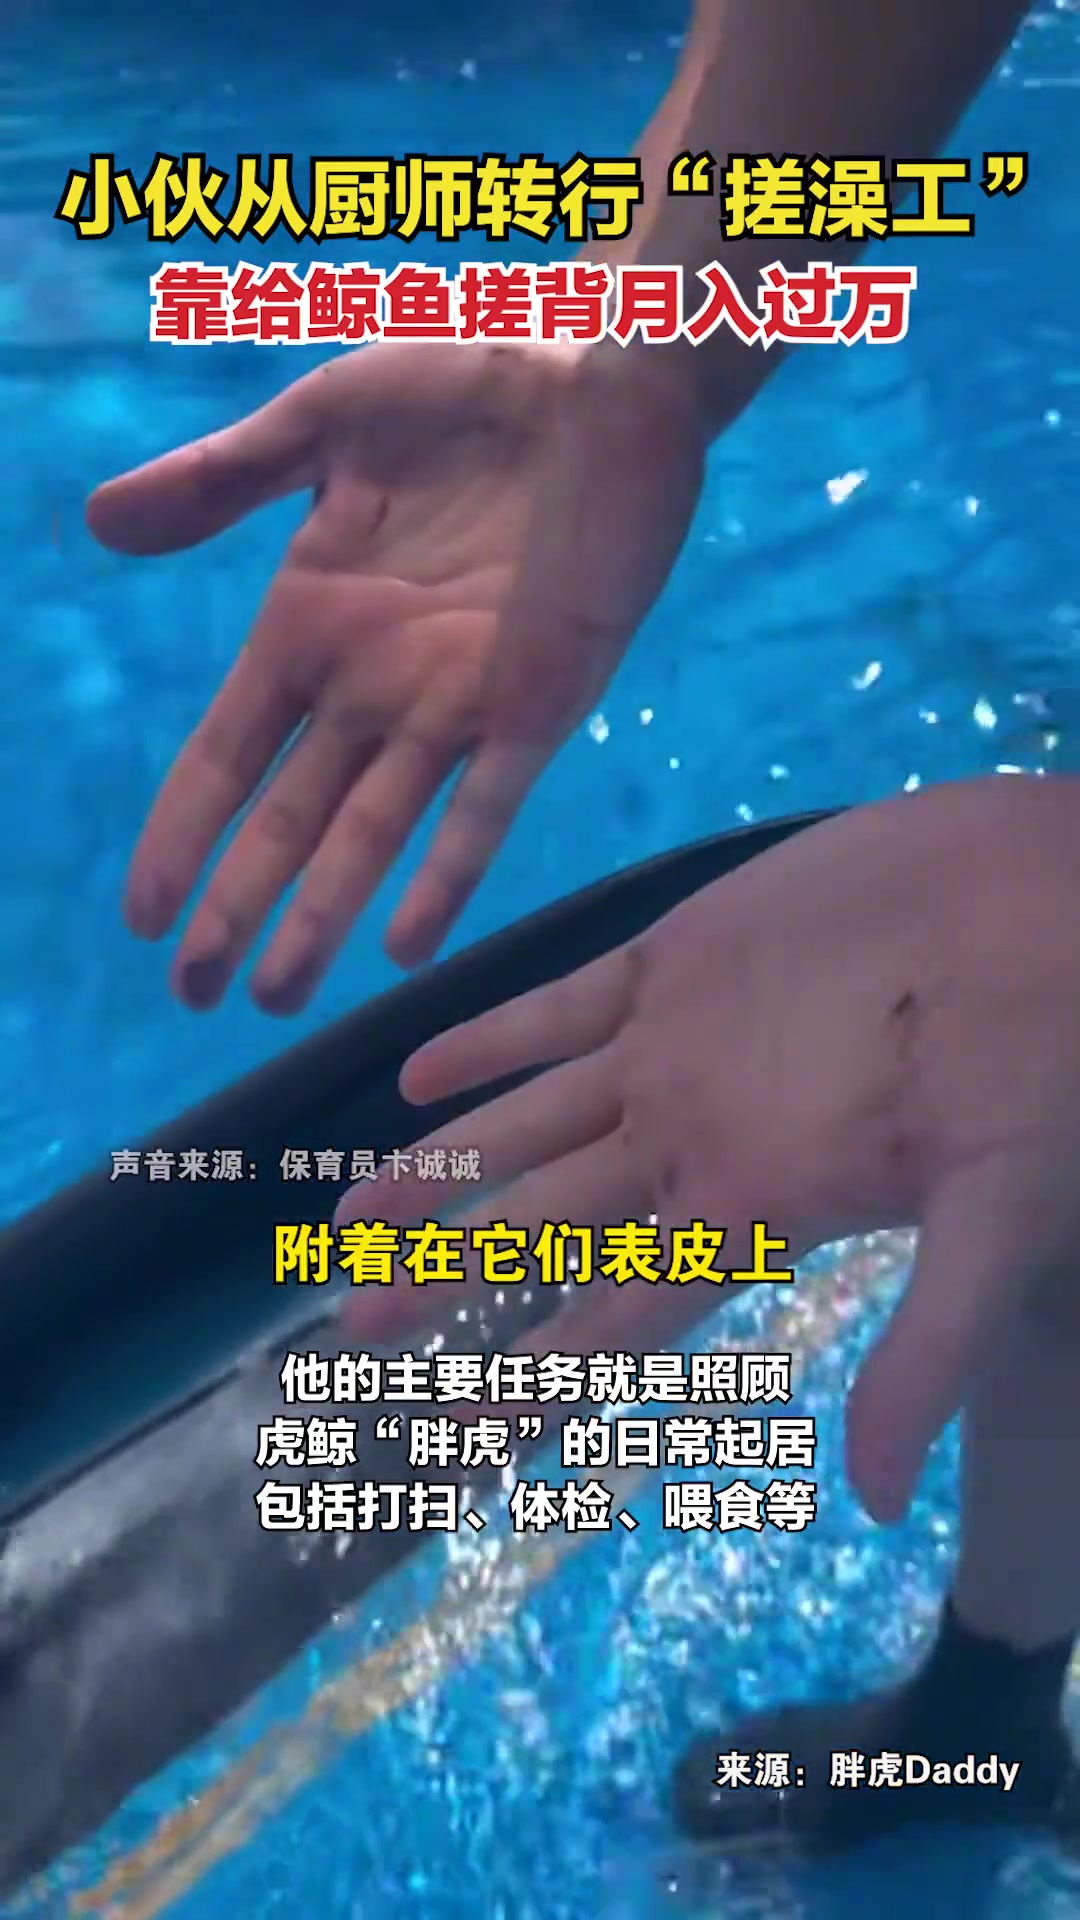 中国人的一天：北京国字号澡堂最后的日子_图片故事_宝应生活网 - 爱宝应，爱生活！